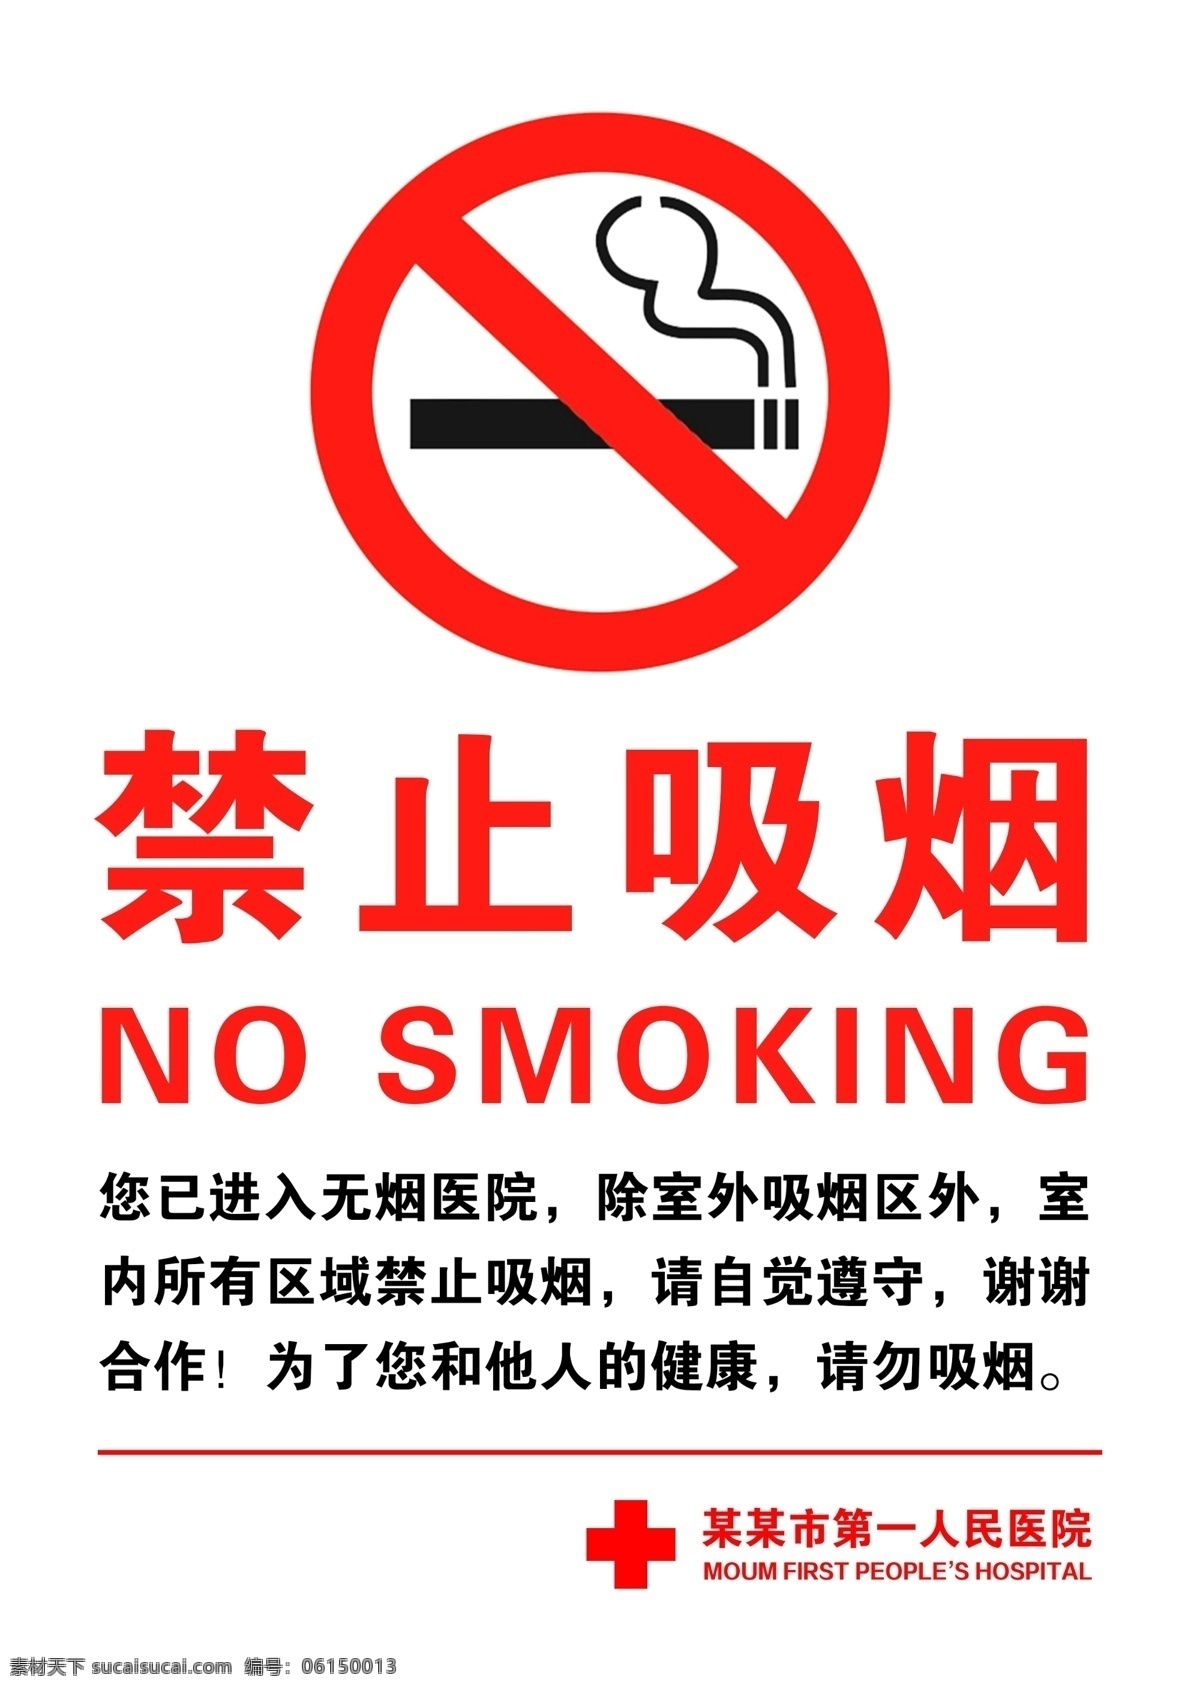 禁止吸烟 无烟医院 禁烟标识 医院标识 标识 禁烟 控烟 吸烟有害健康 无烟日 世界无烟日 企划设计 宣传品 广告标识 分层